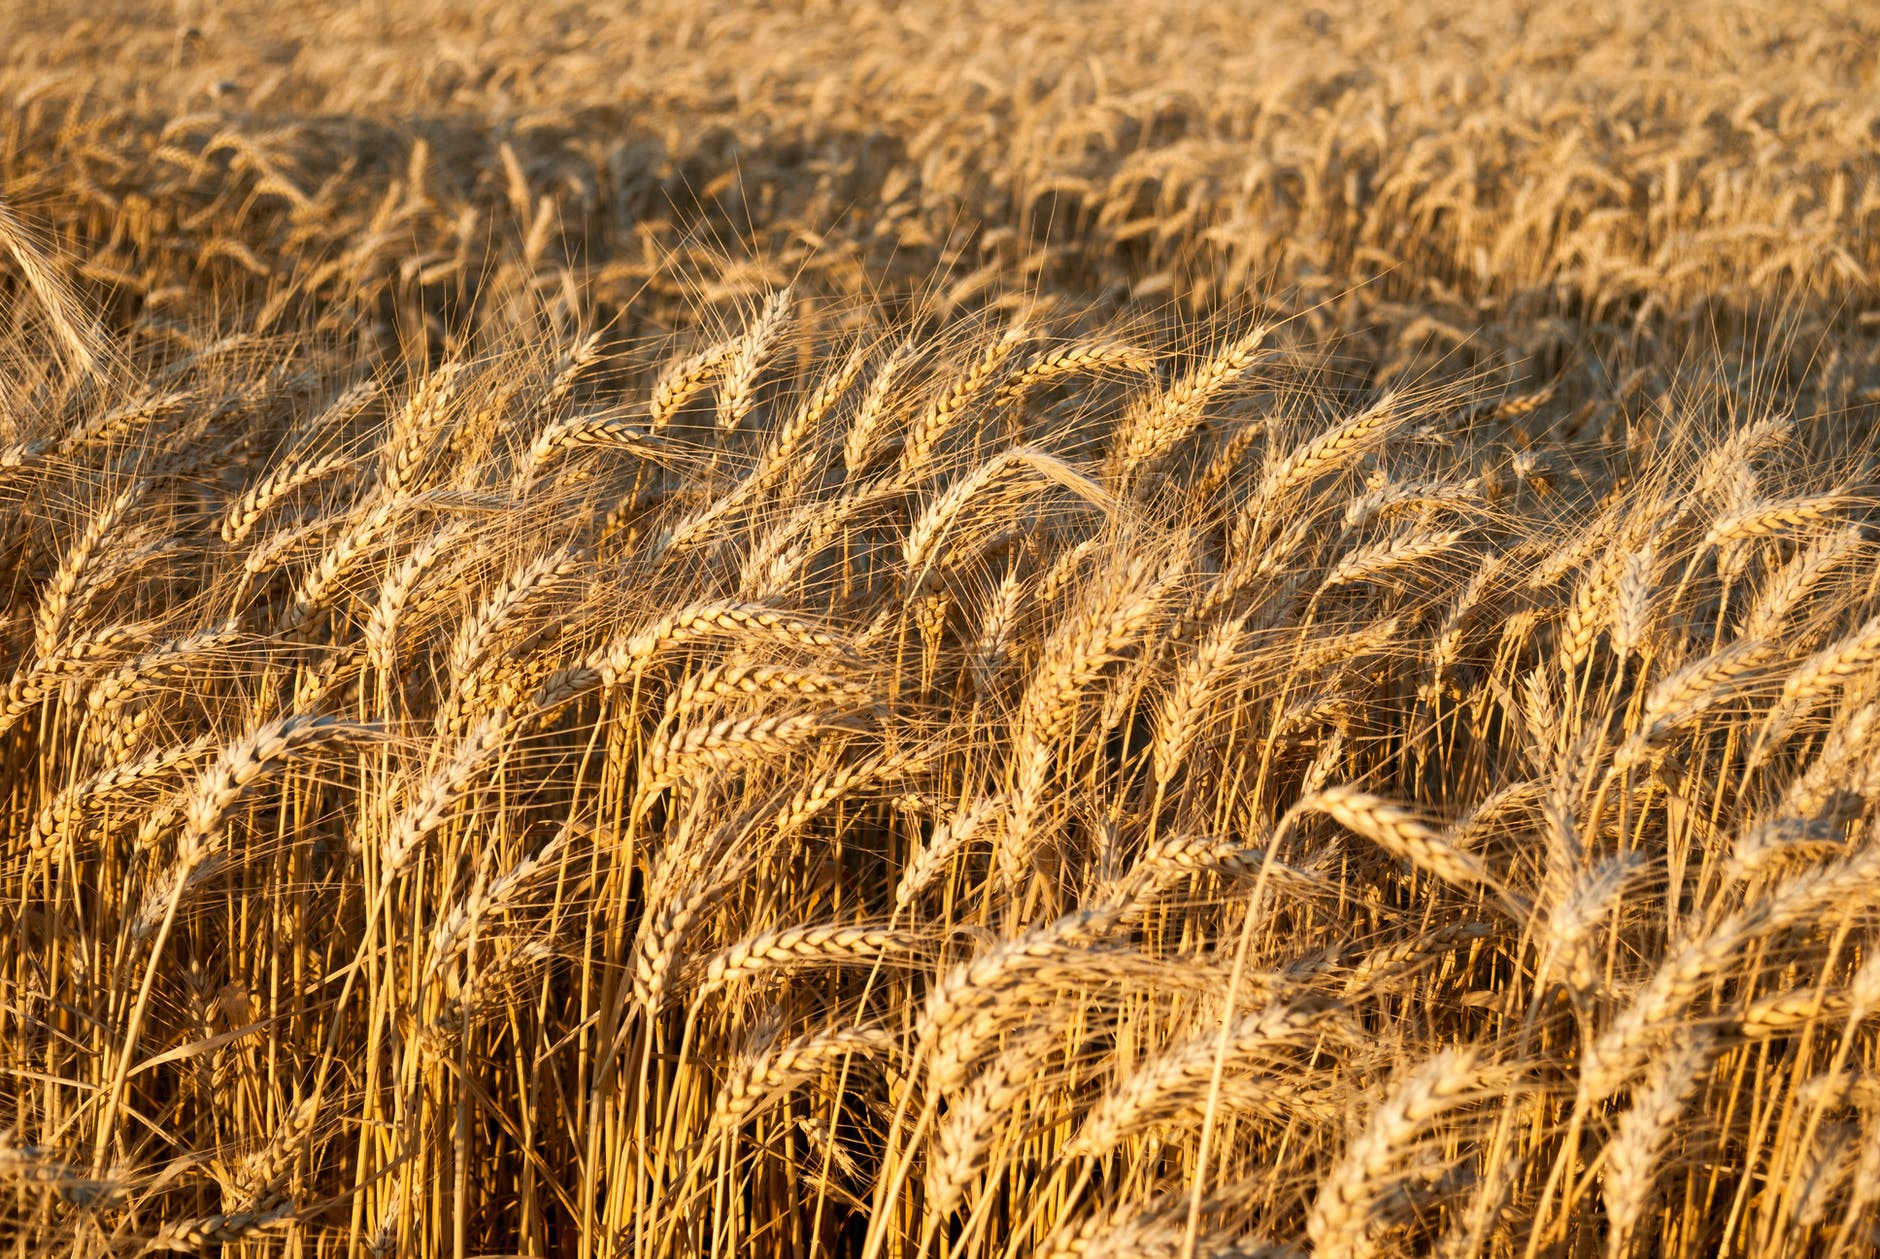 Exclusif: La Tunisie achète du blé tendre et de l’orge fourragère dans le cadre d’un appel d’offres